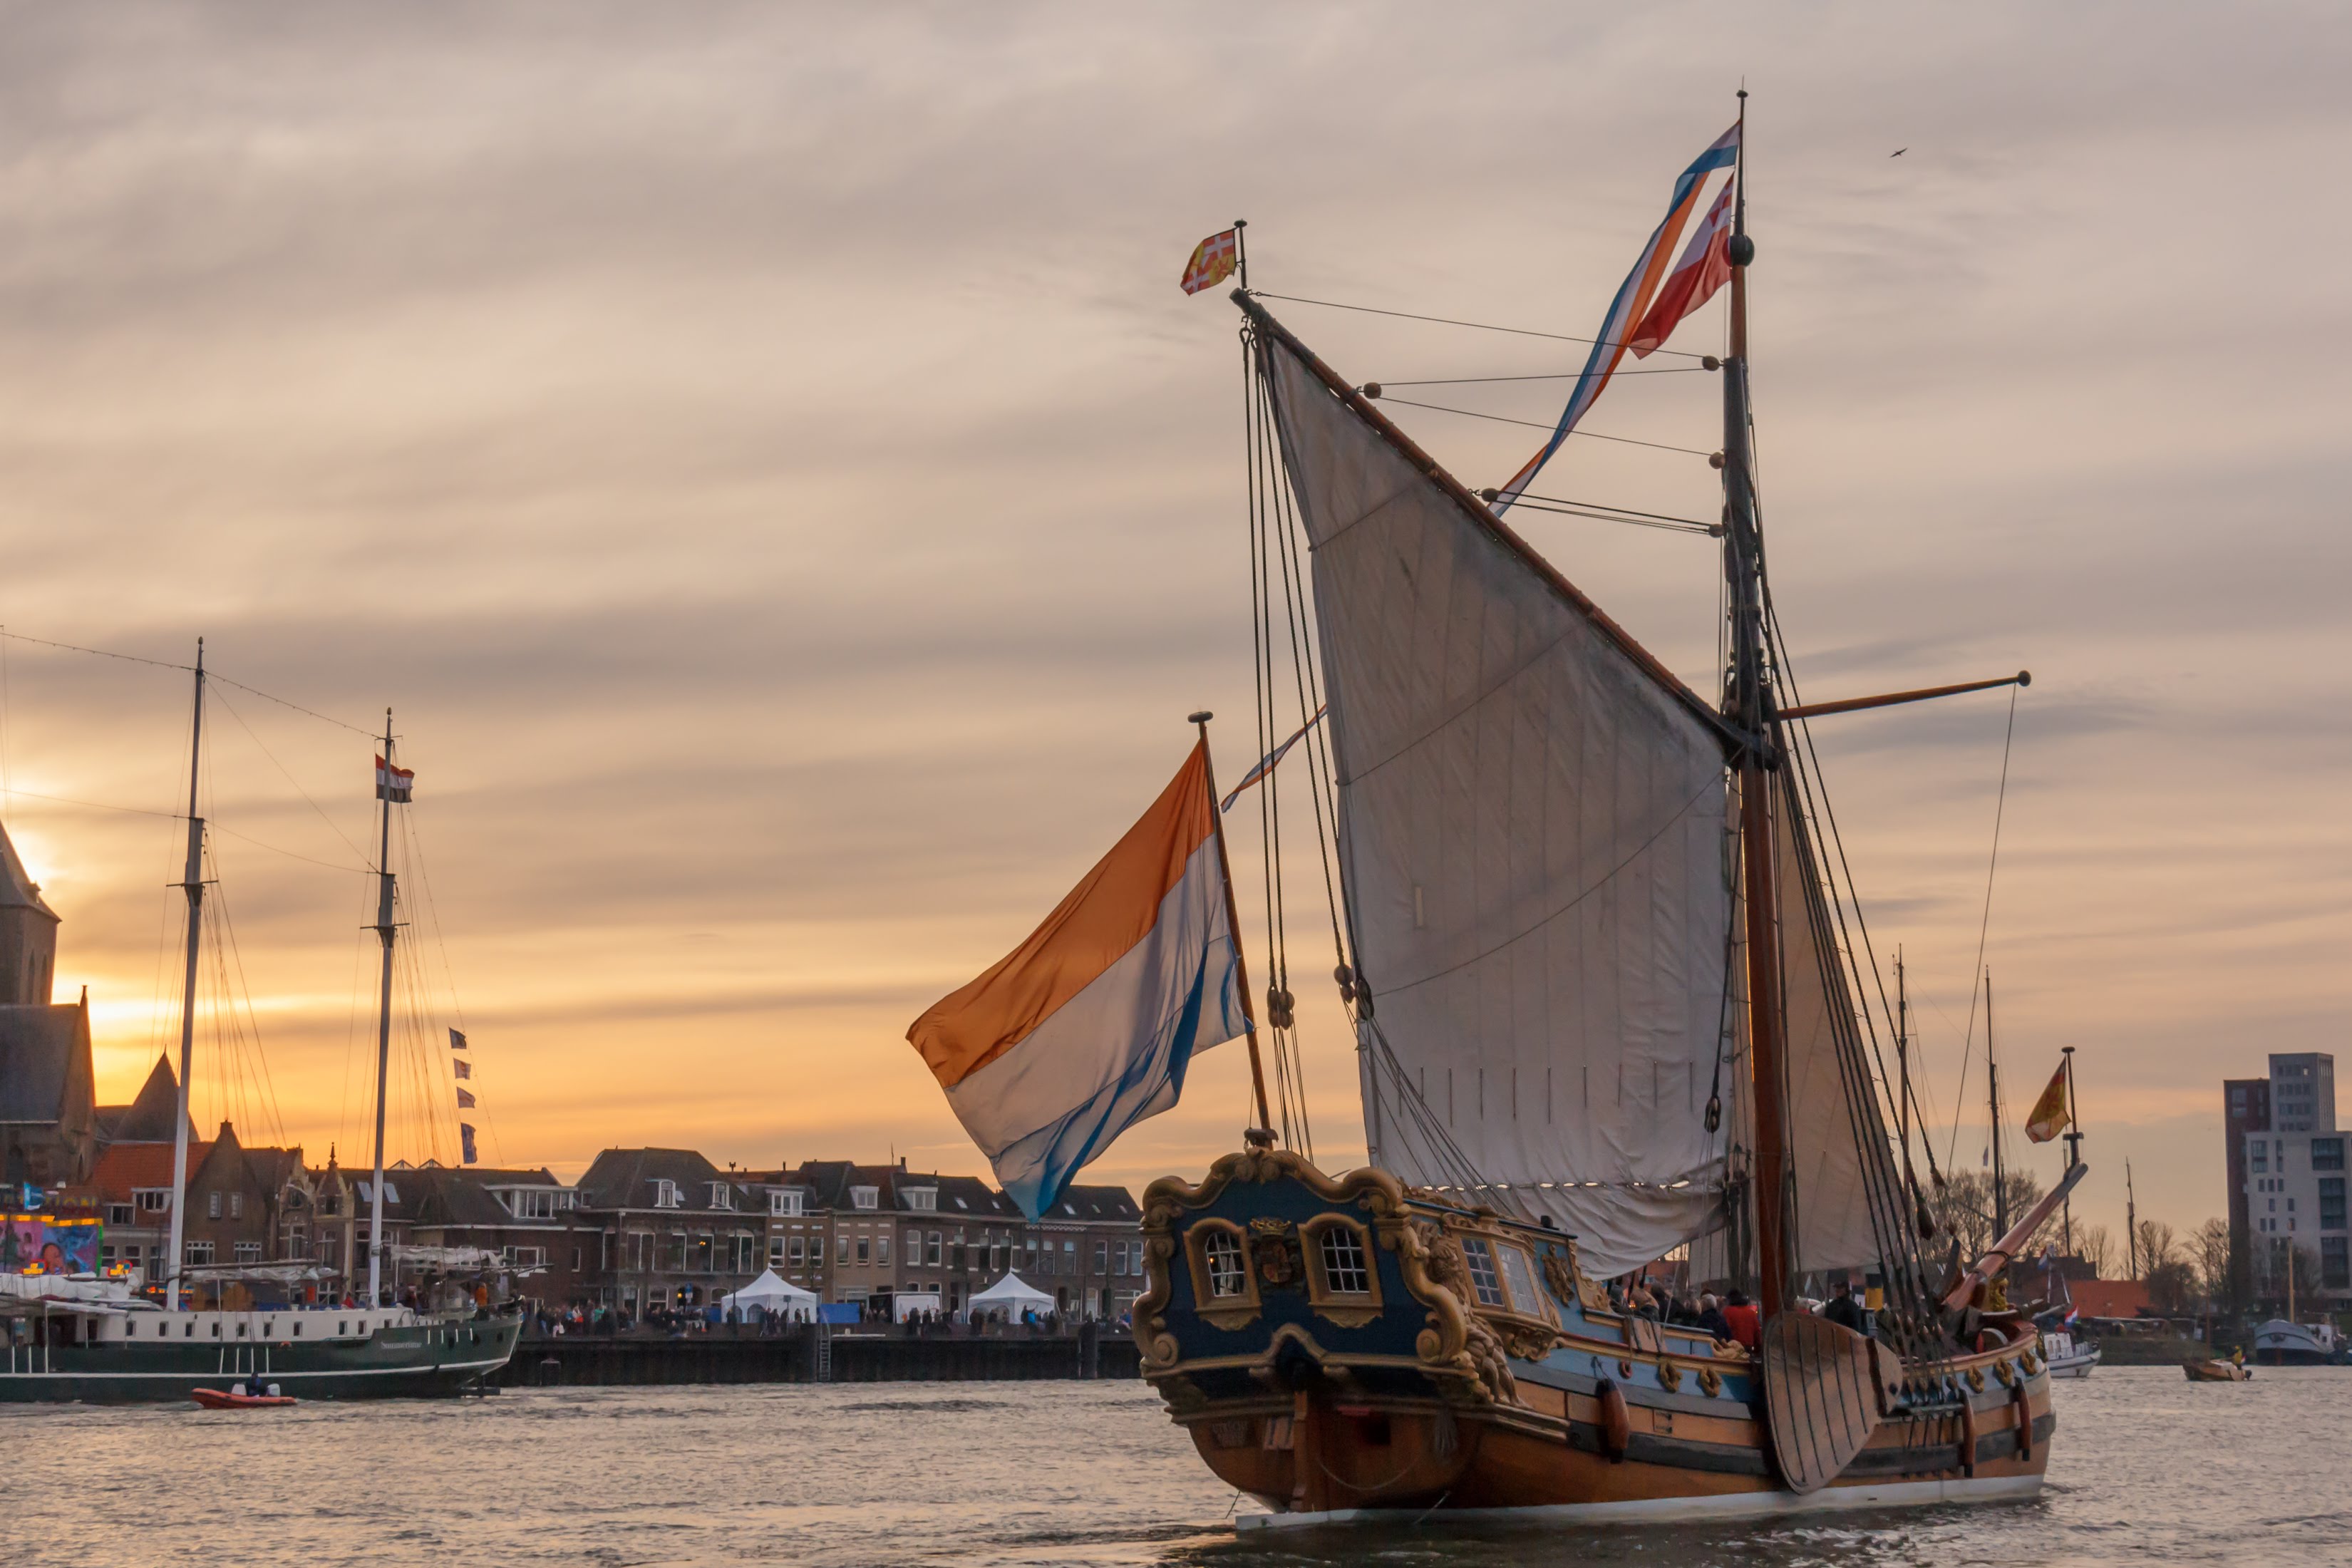 Kampen, The Netherlands - March 30, 2018: State Yacht De Utrecht